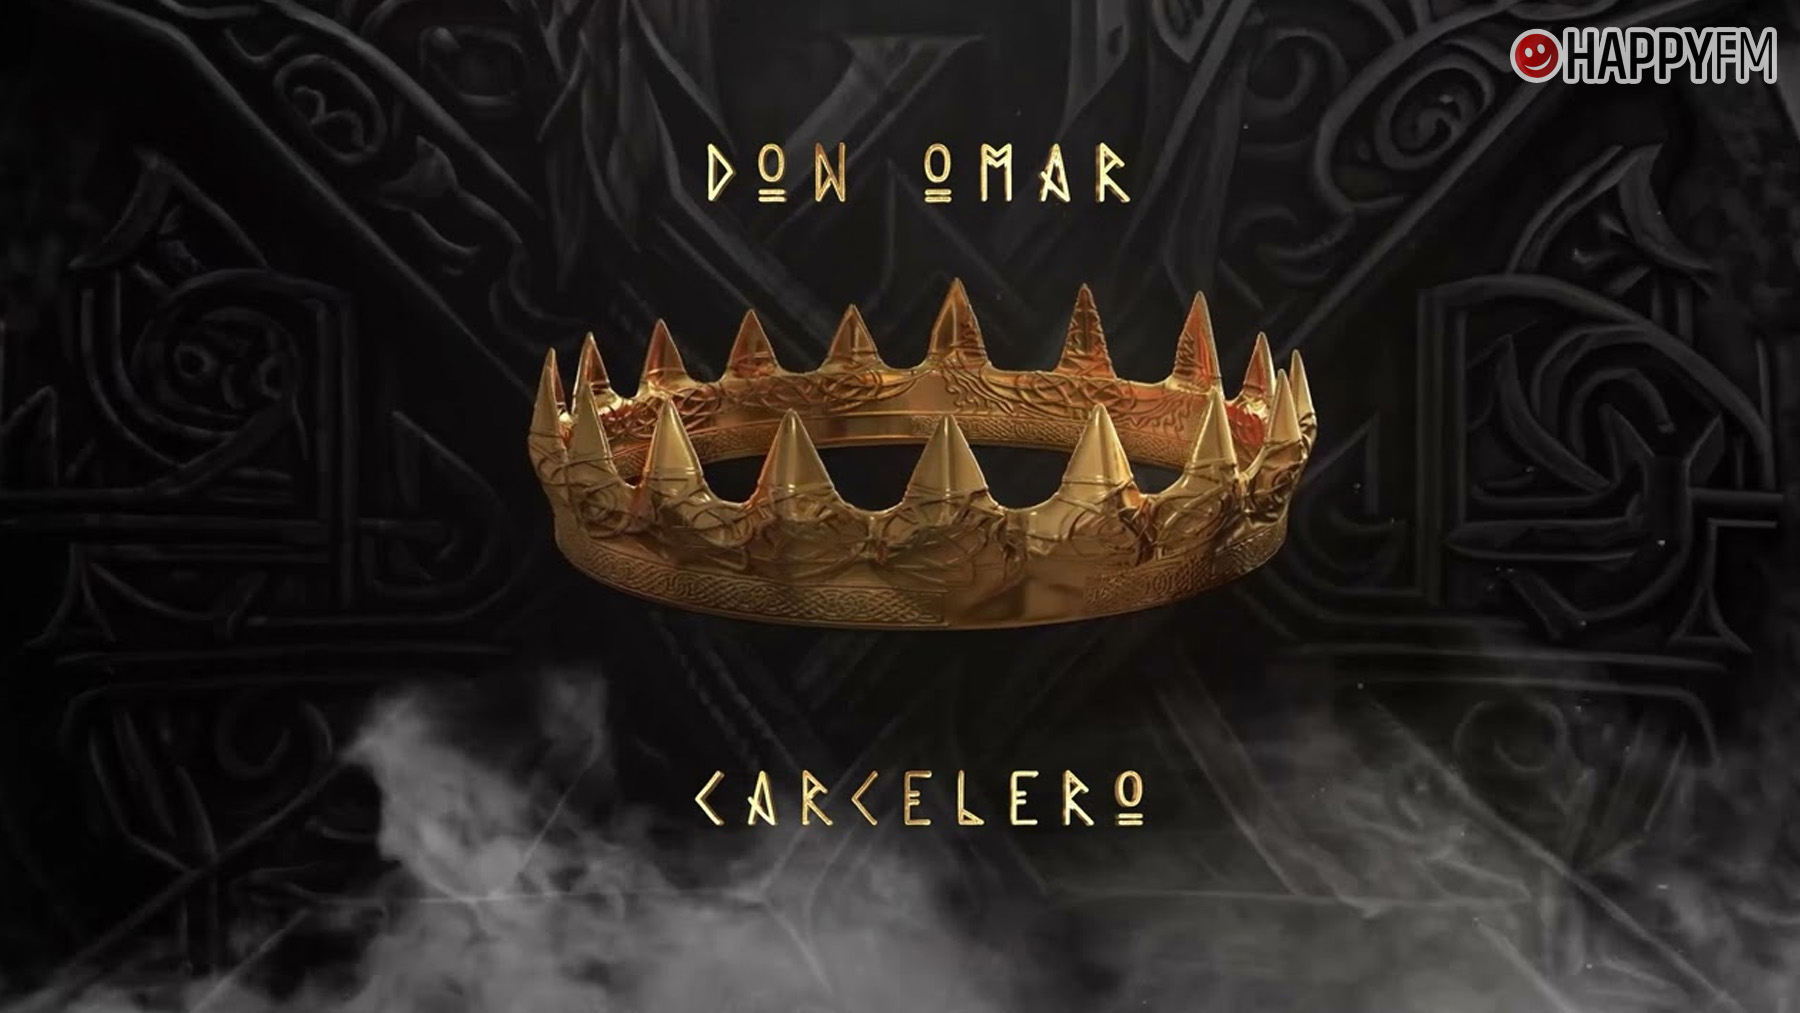 ‘Carcelero’, de Don Omar: letra y vídeo